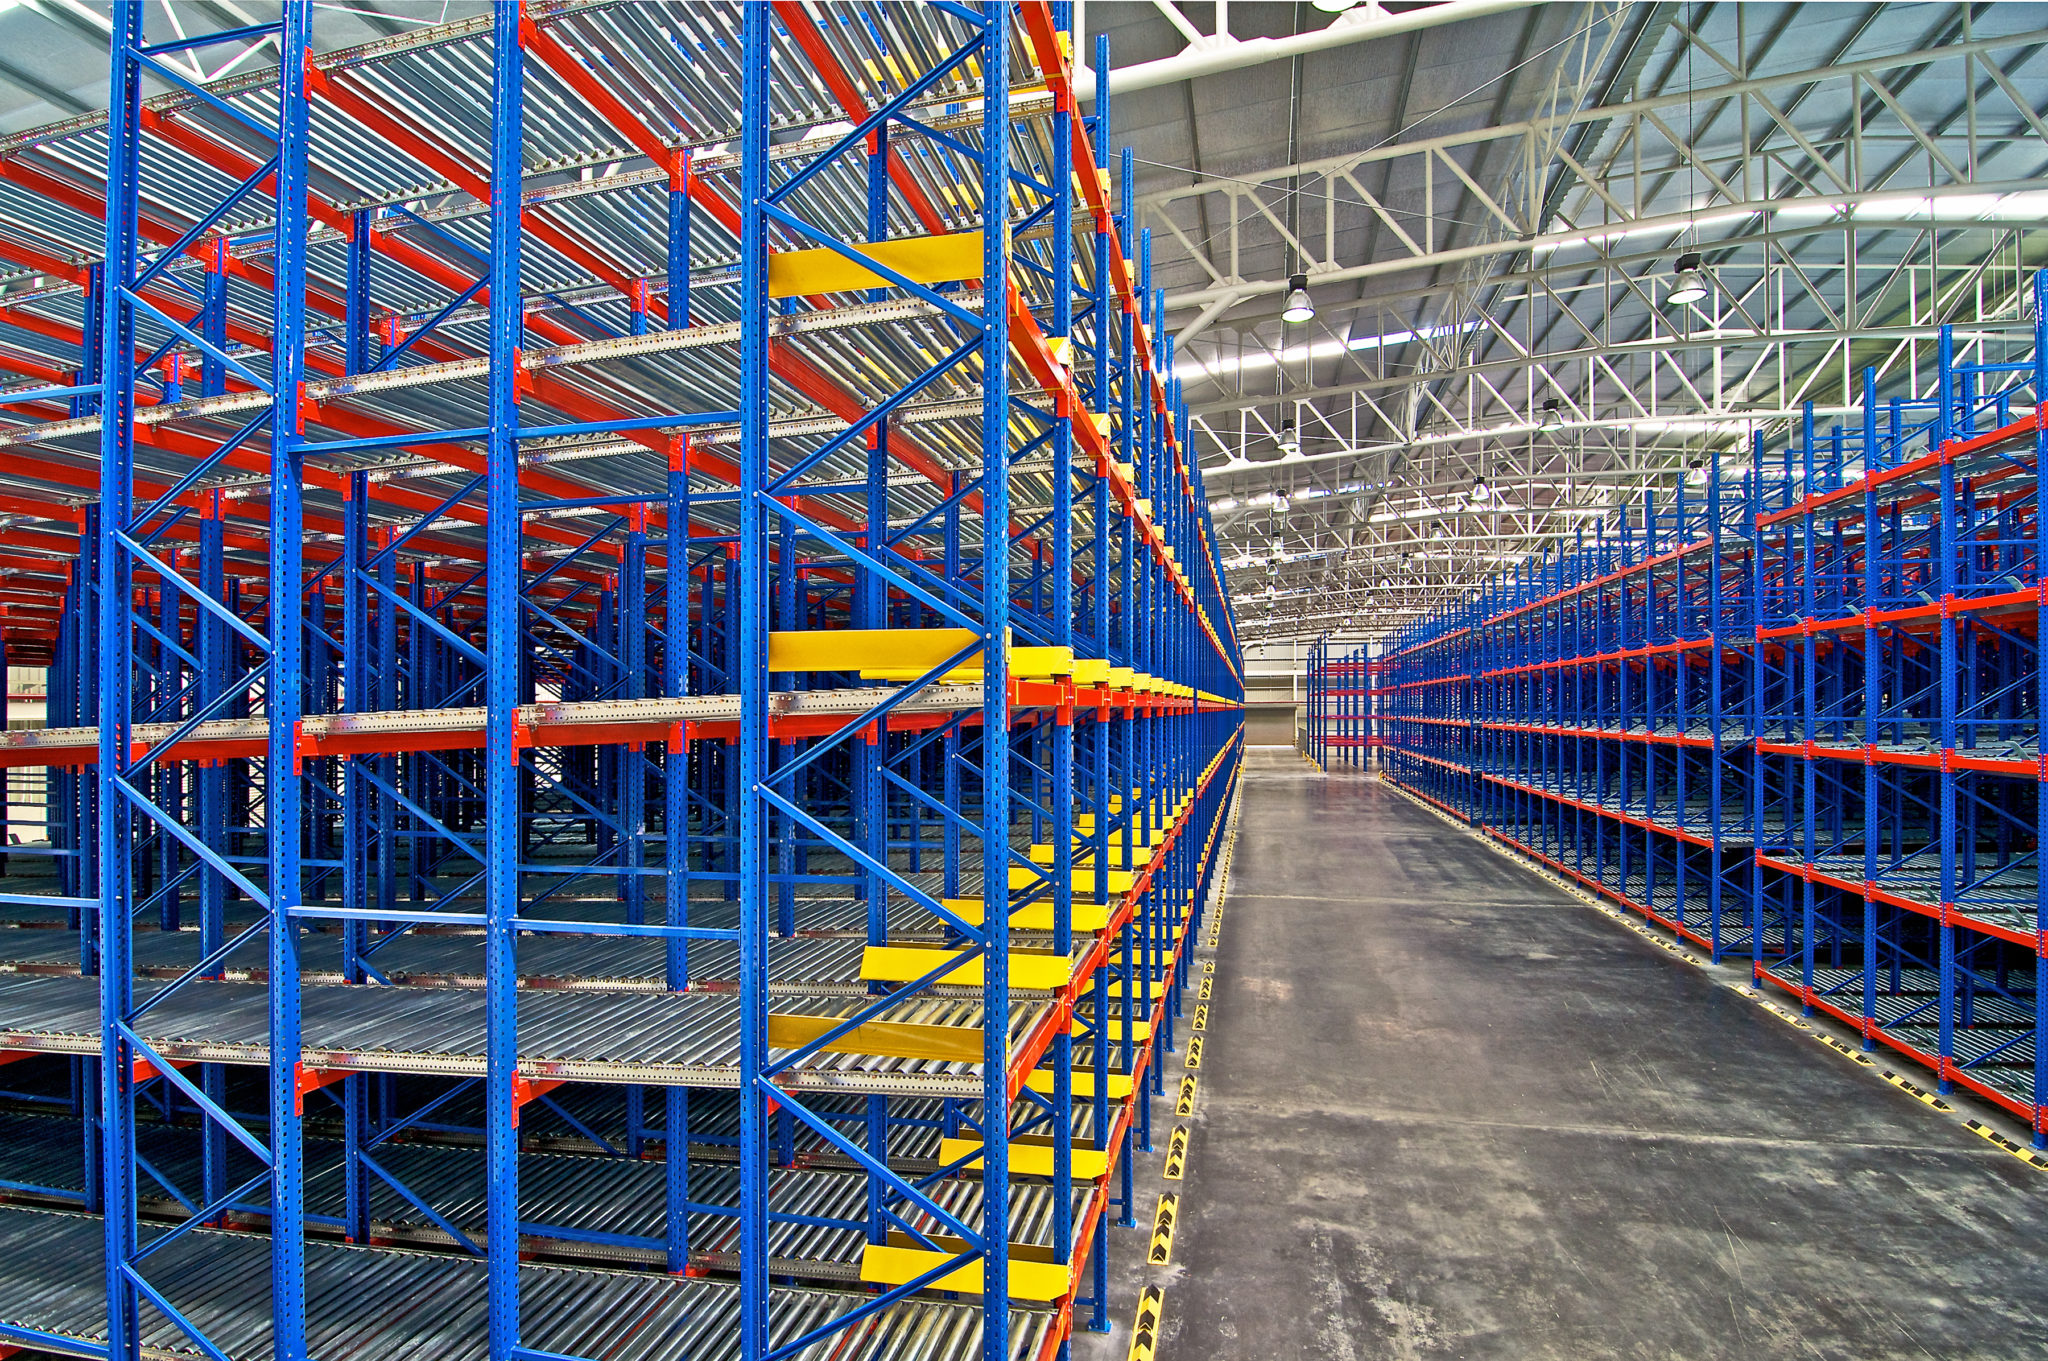 Warehouse  shelving  storage, metal, pallet racking system